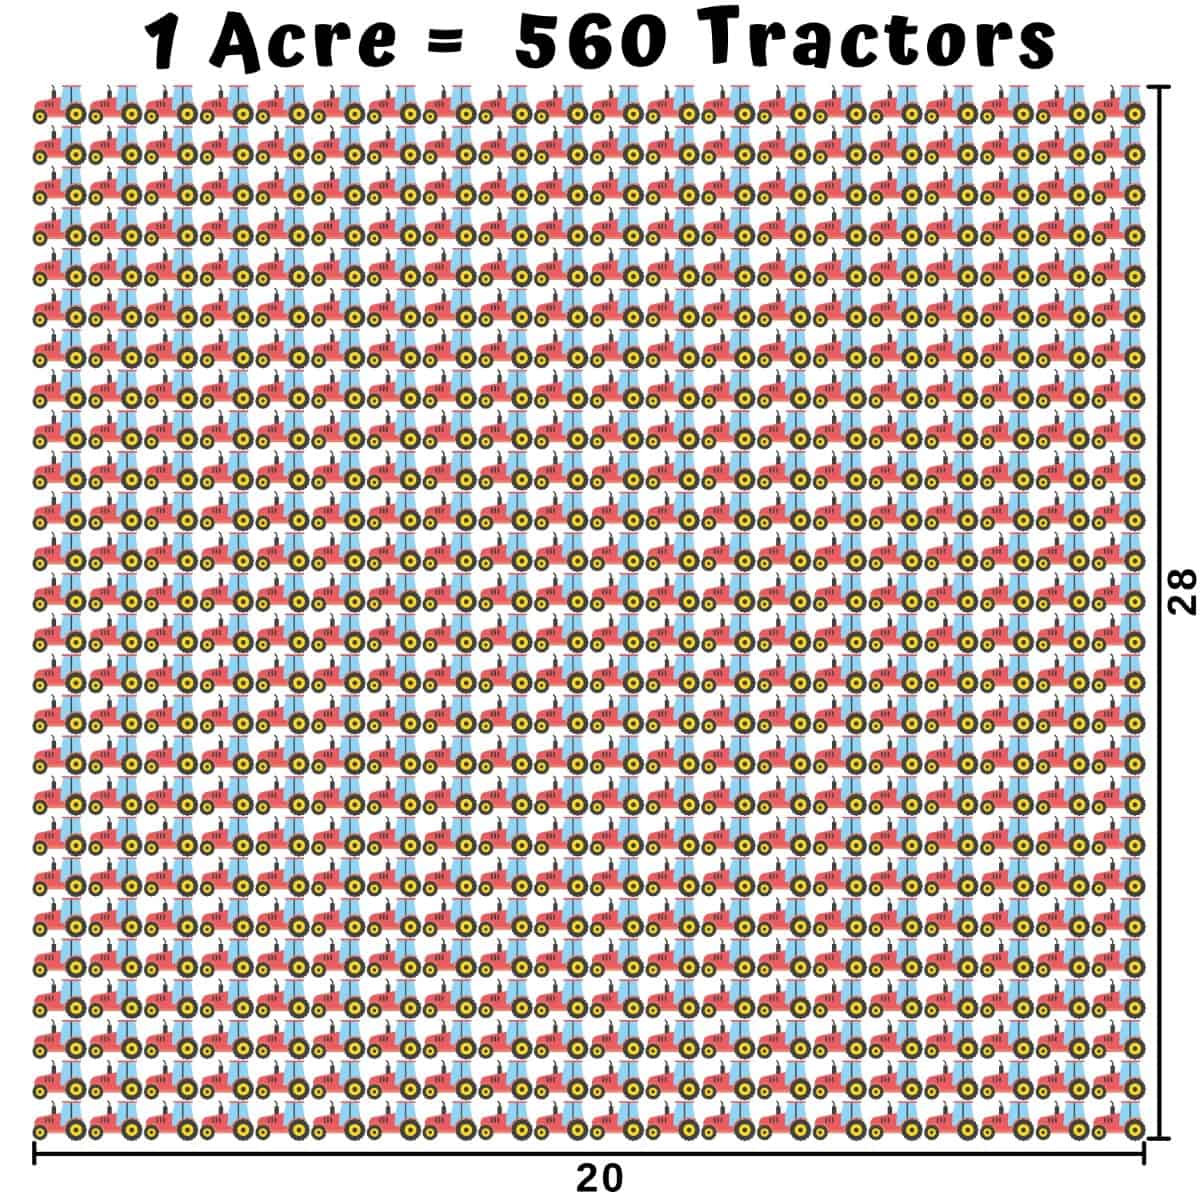  Quelle est la taille d'un Acre - Tracteurs